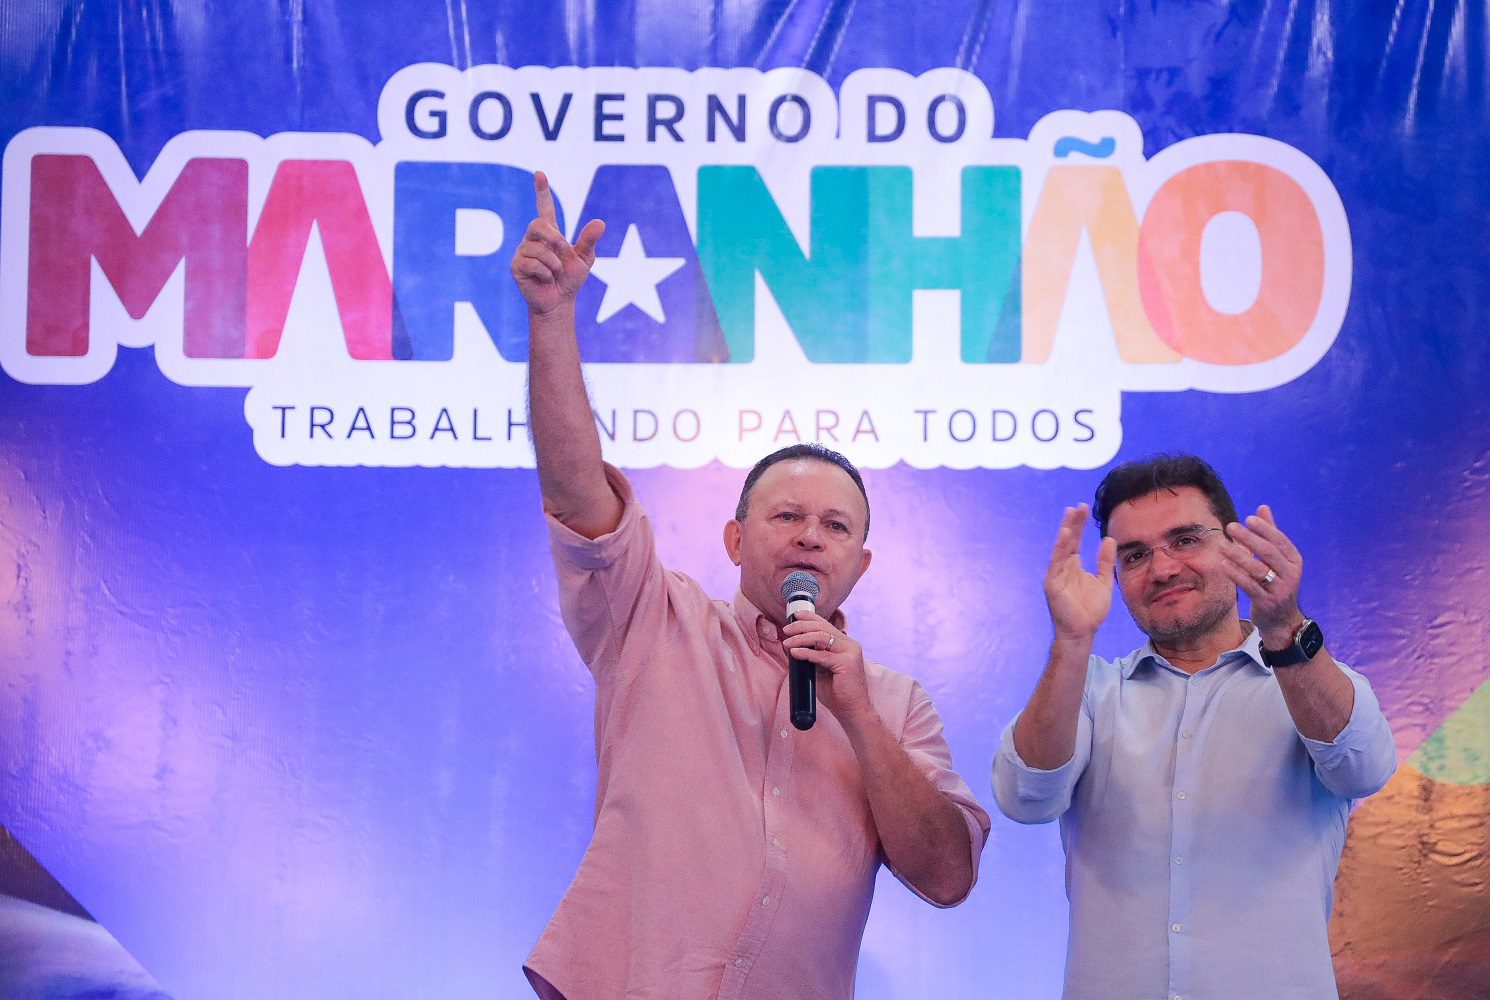 Empresários poderão financiar até R$ 15 milhões para investimentos turísticos no Maranhão